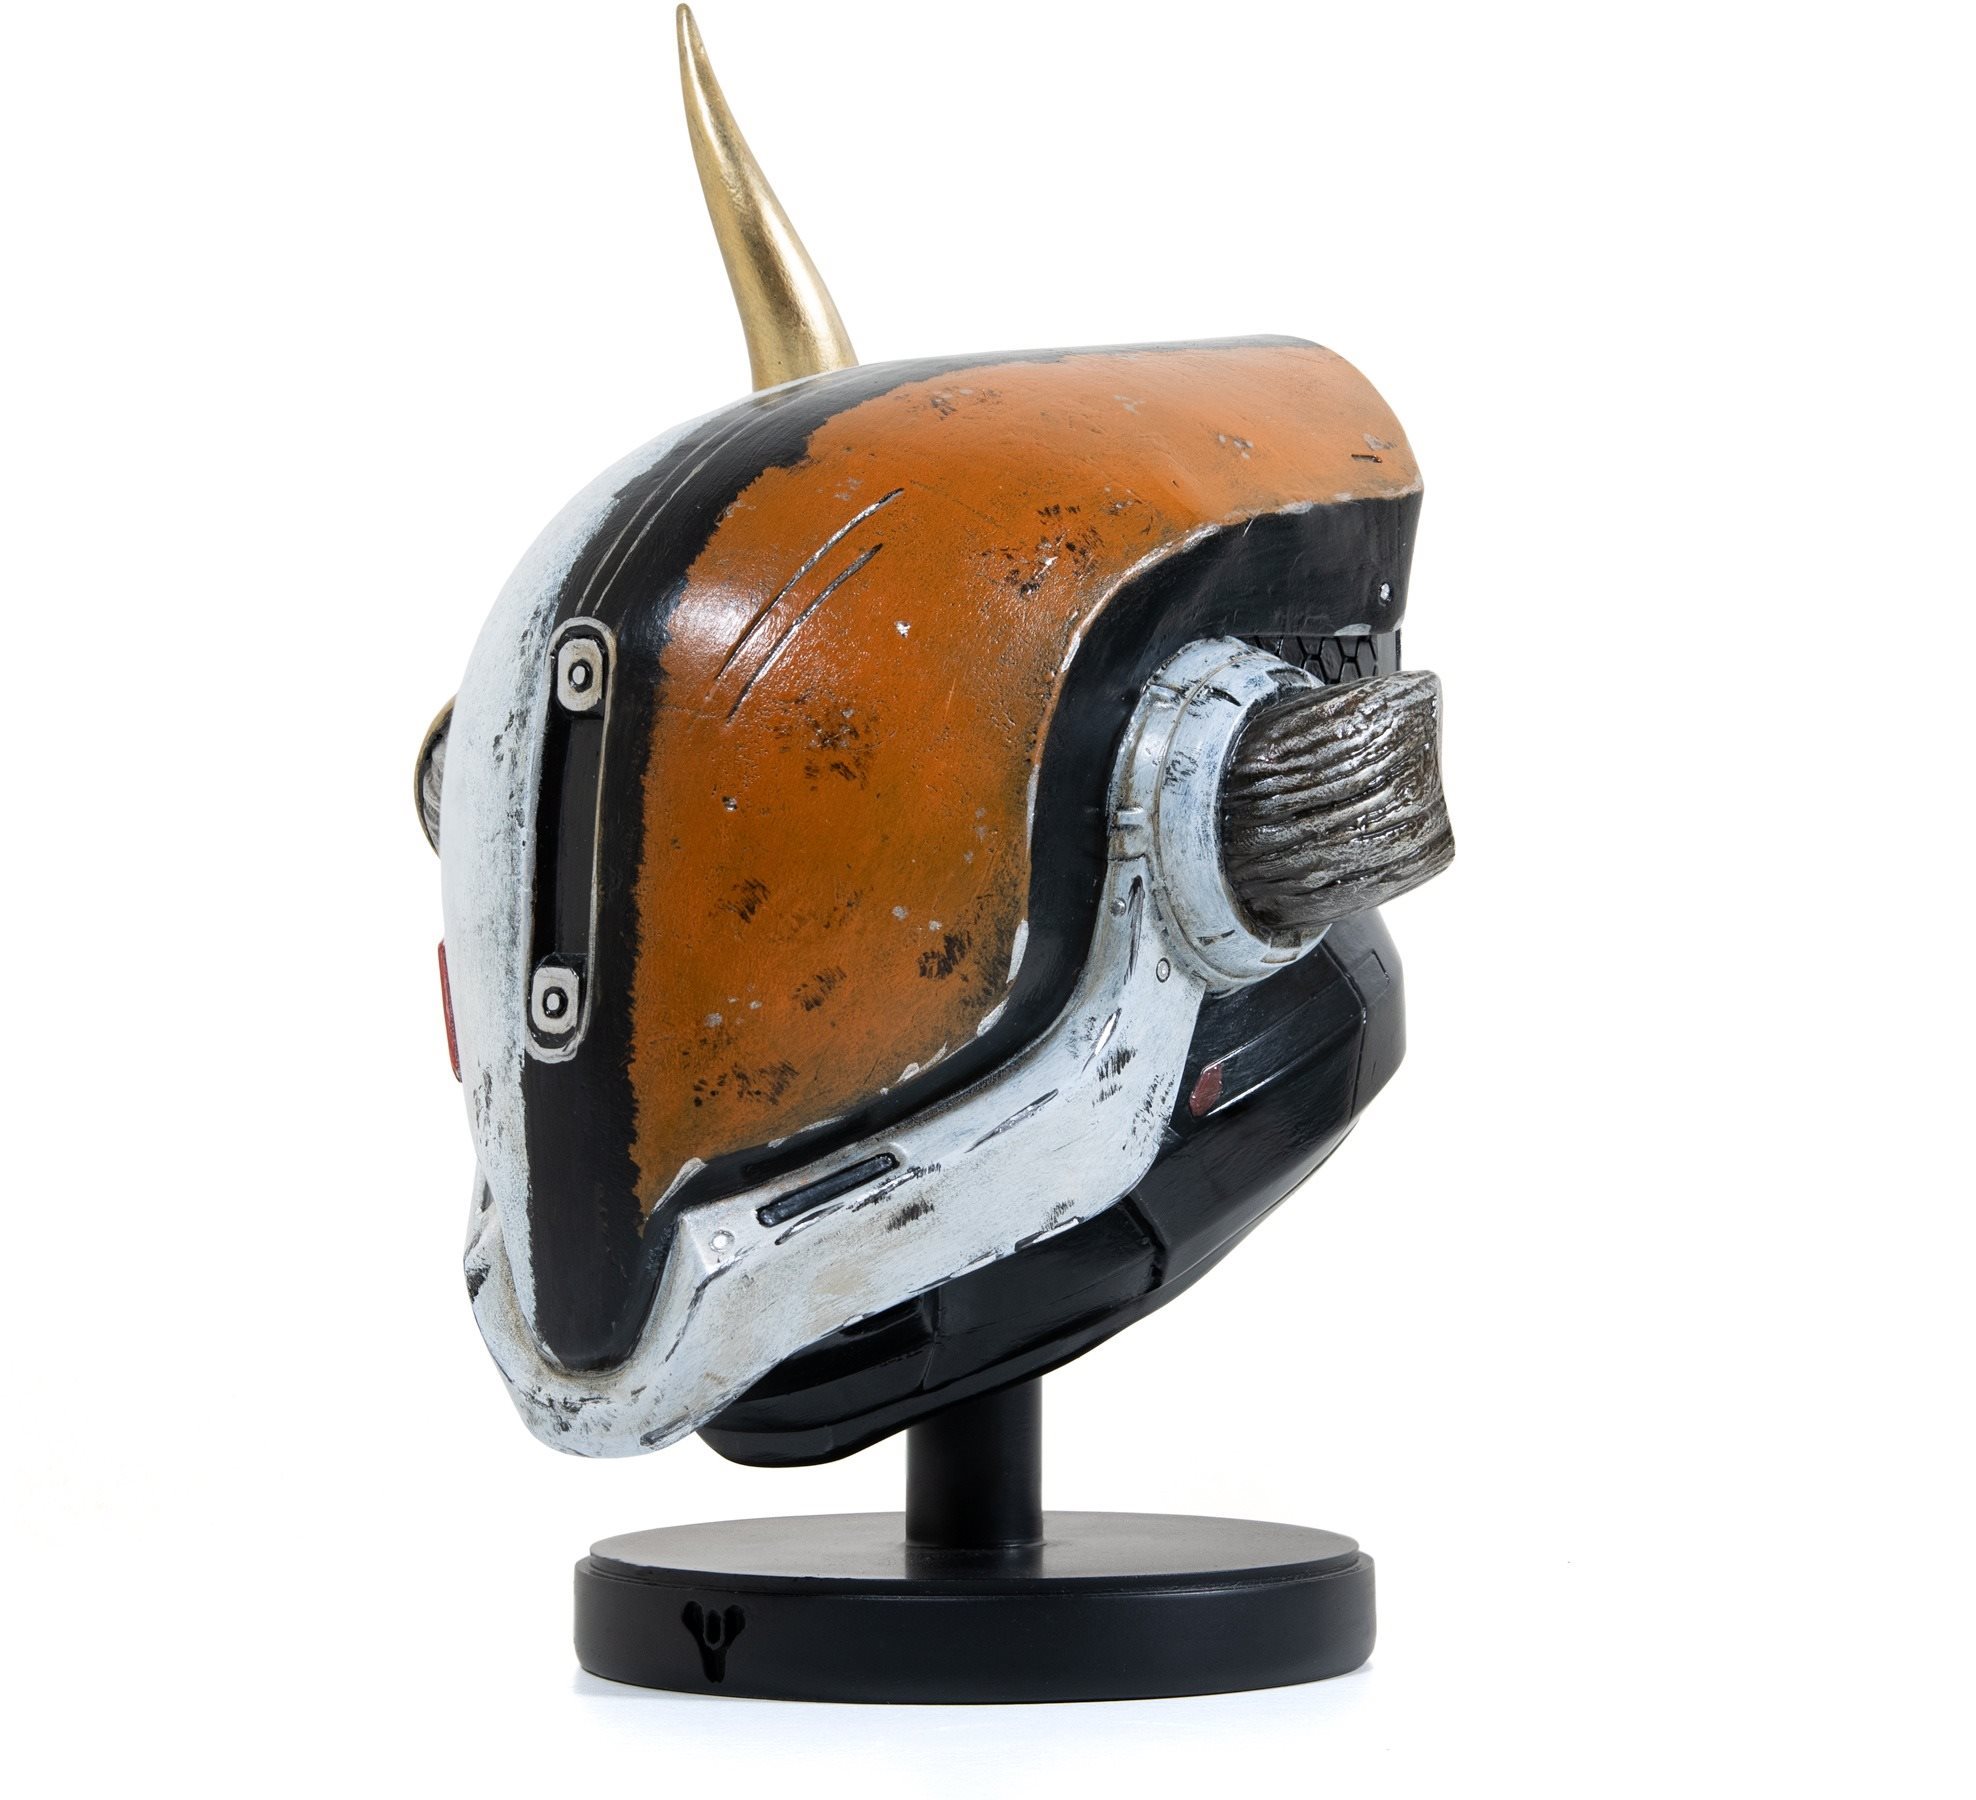 Figura Destiny 2 - Lord Shaxx Helmet